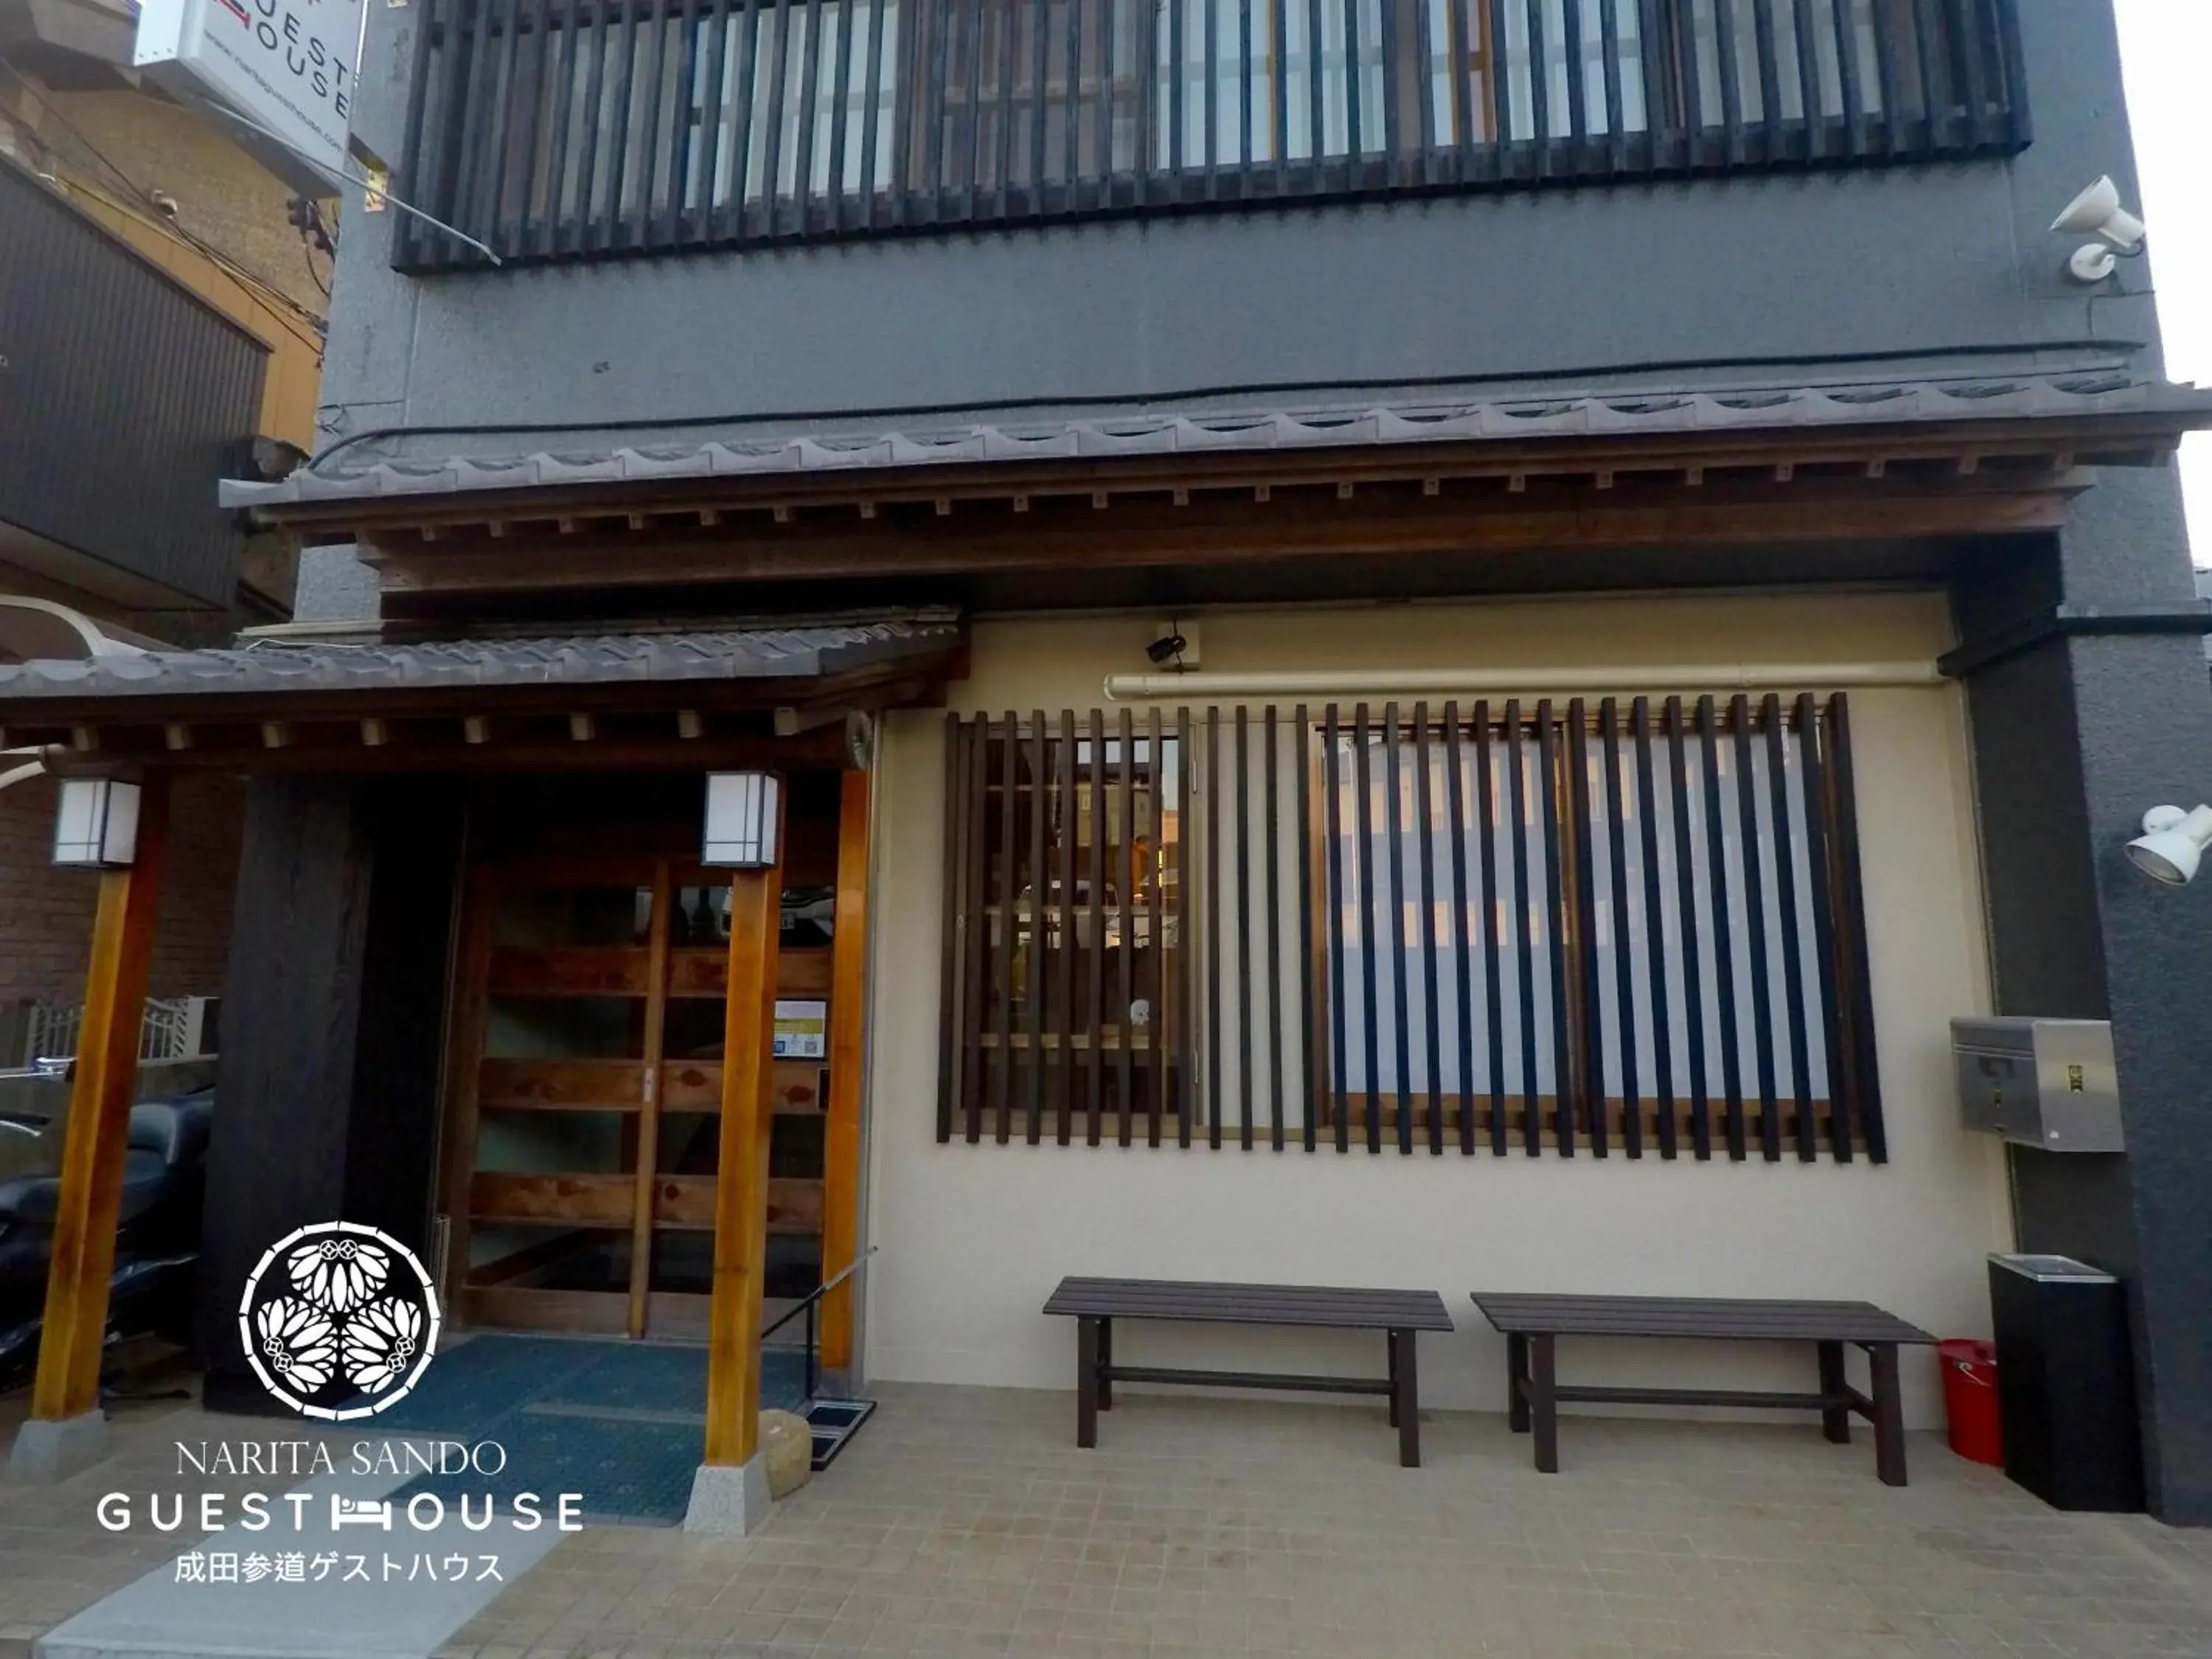 Facade/entrance in Narita Sando Guesthouse